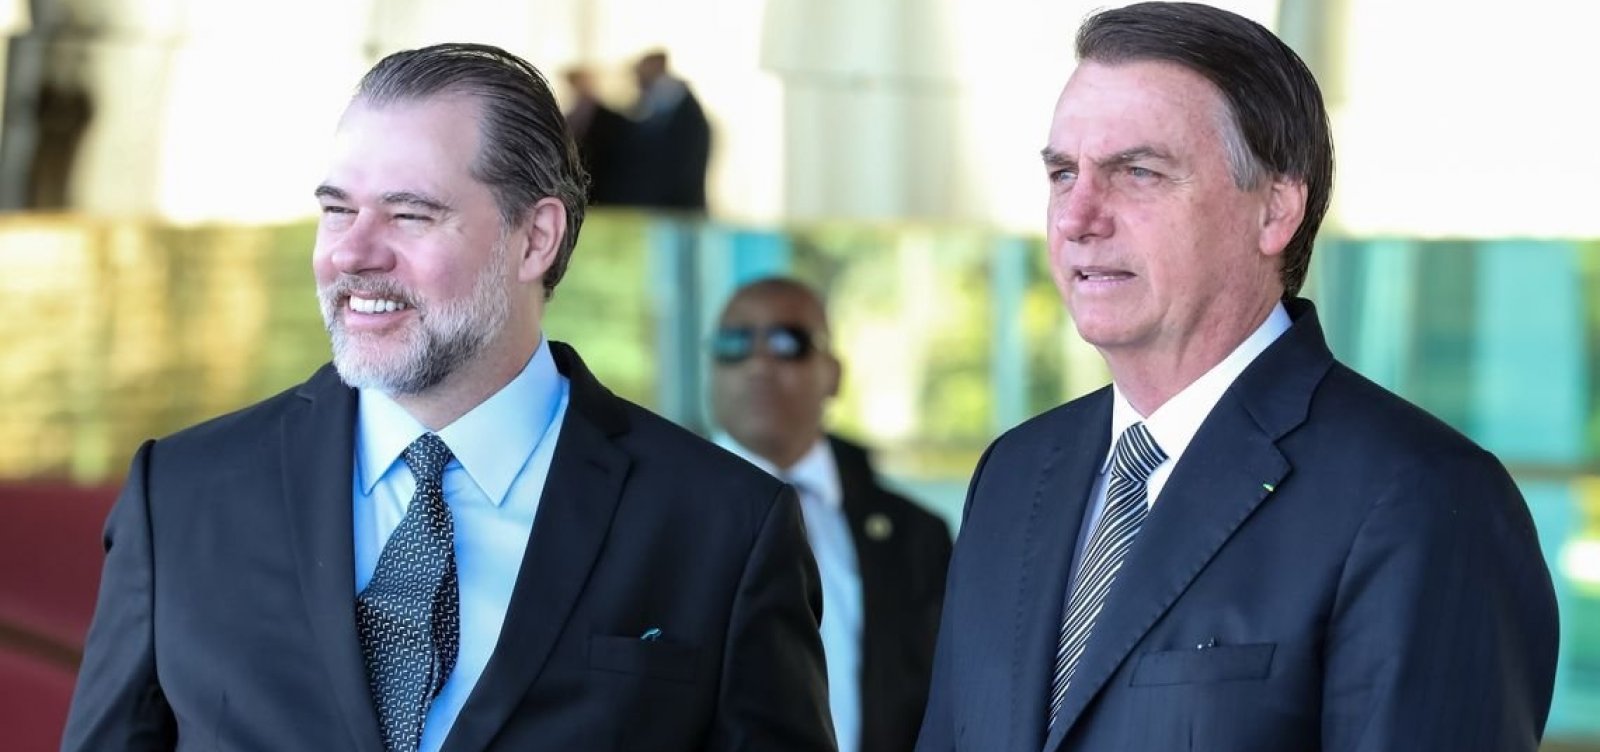 'É muito bom termos a Justiça ao nosso lado', diz Bolsonaro em elogio a Toffoli